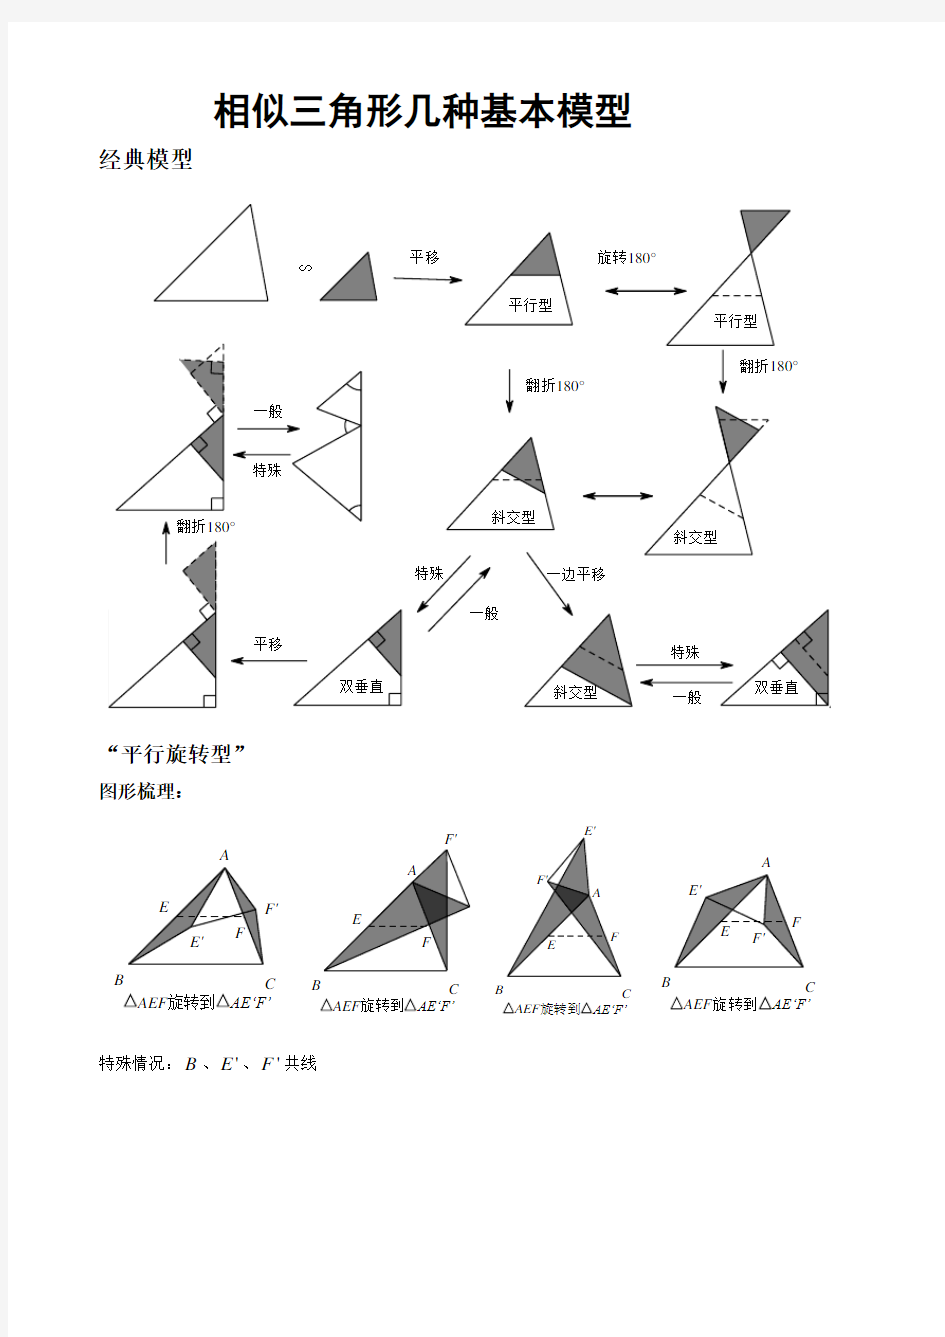 相似三角形几种基本模型